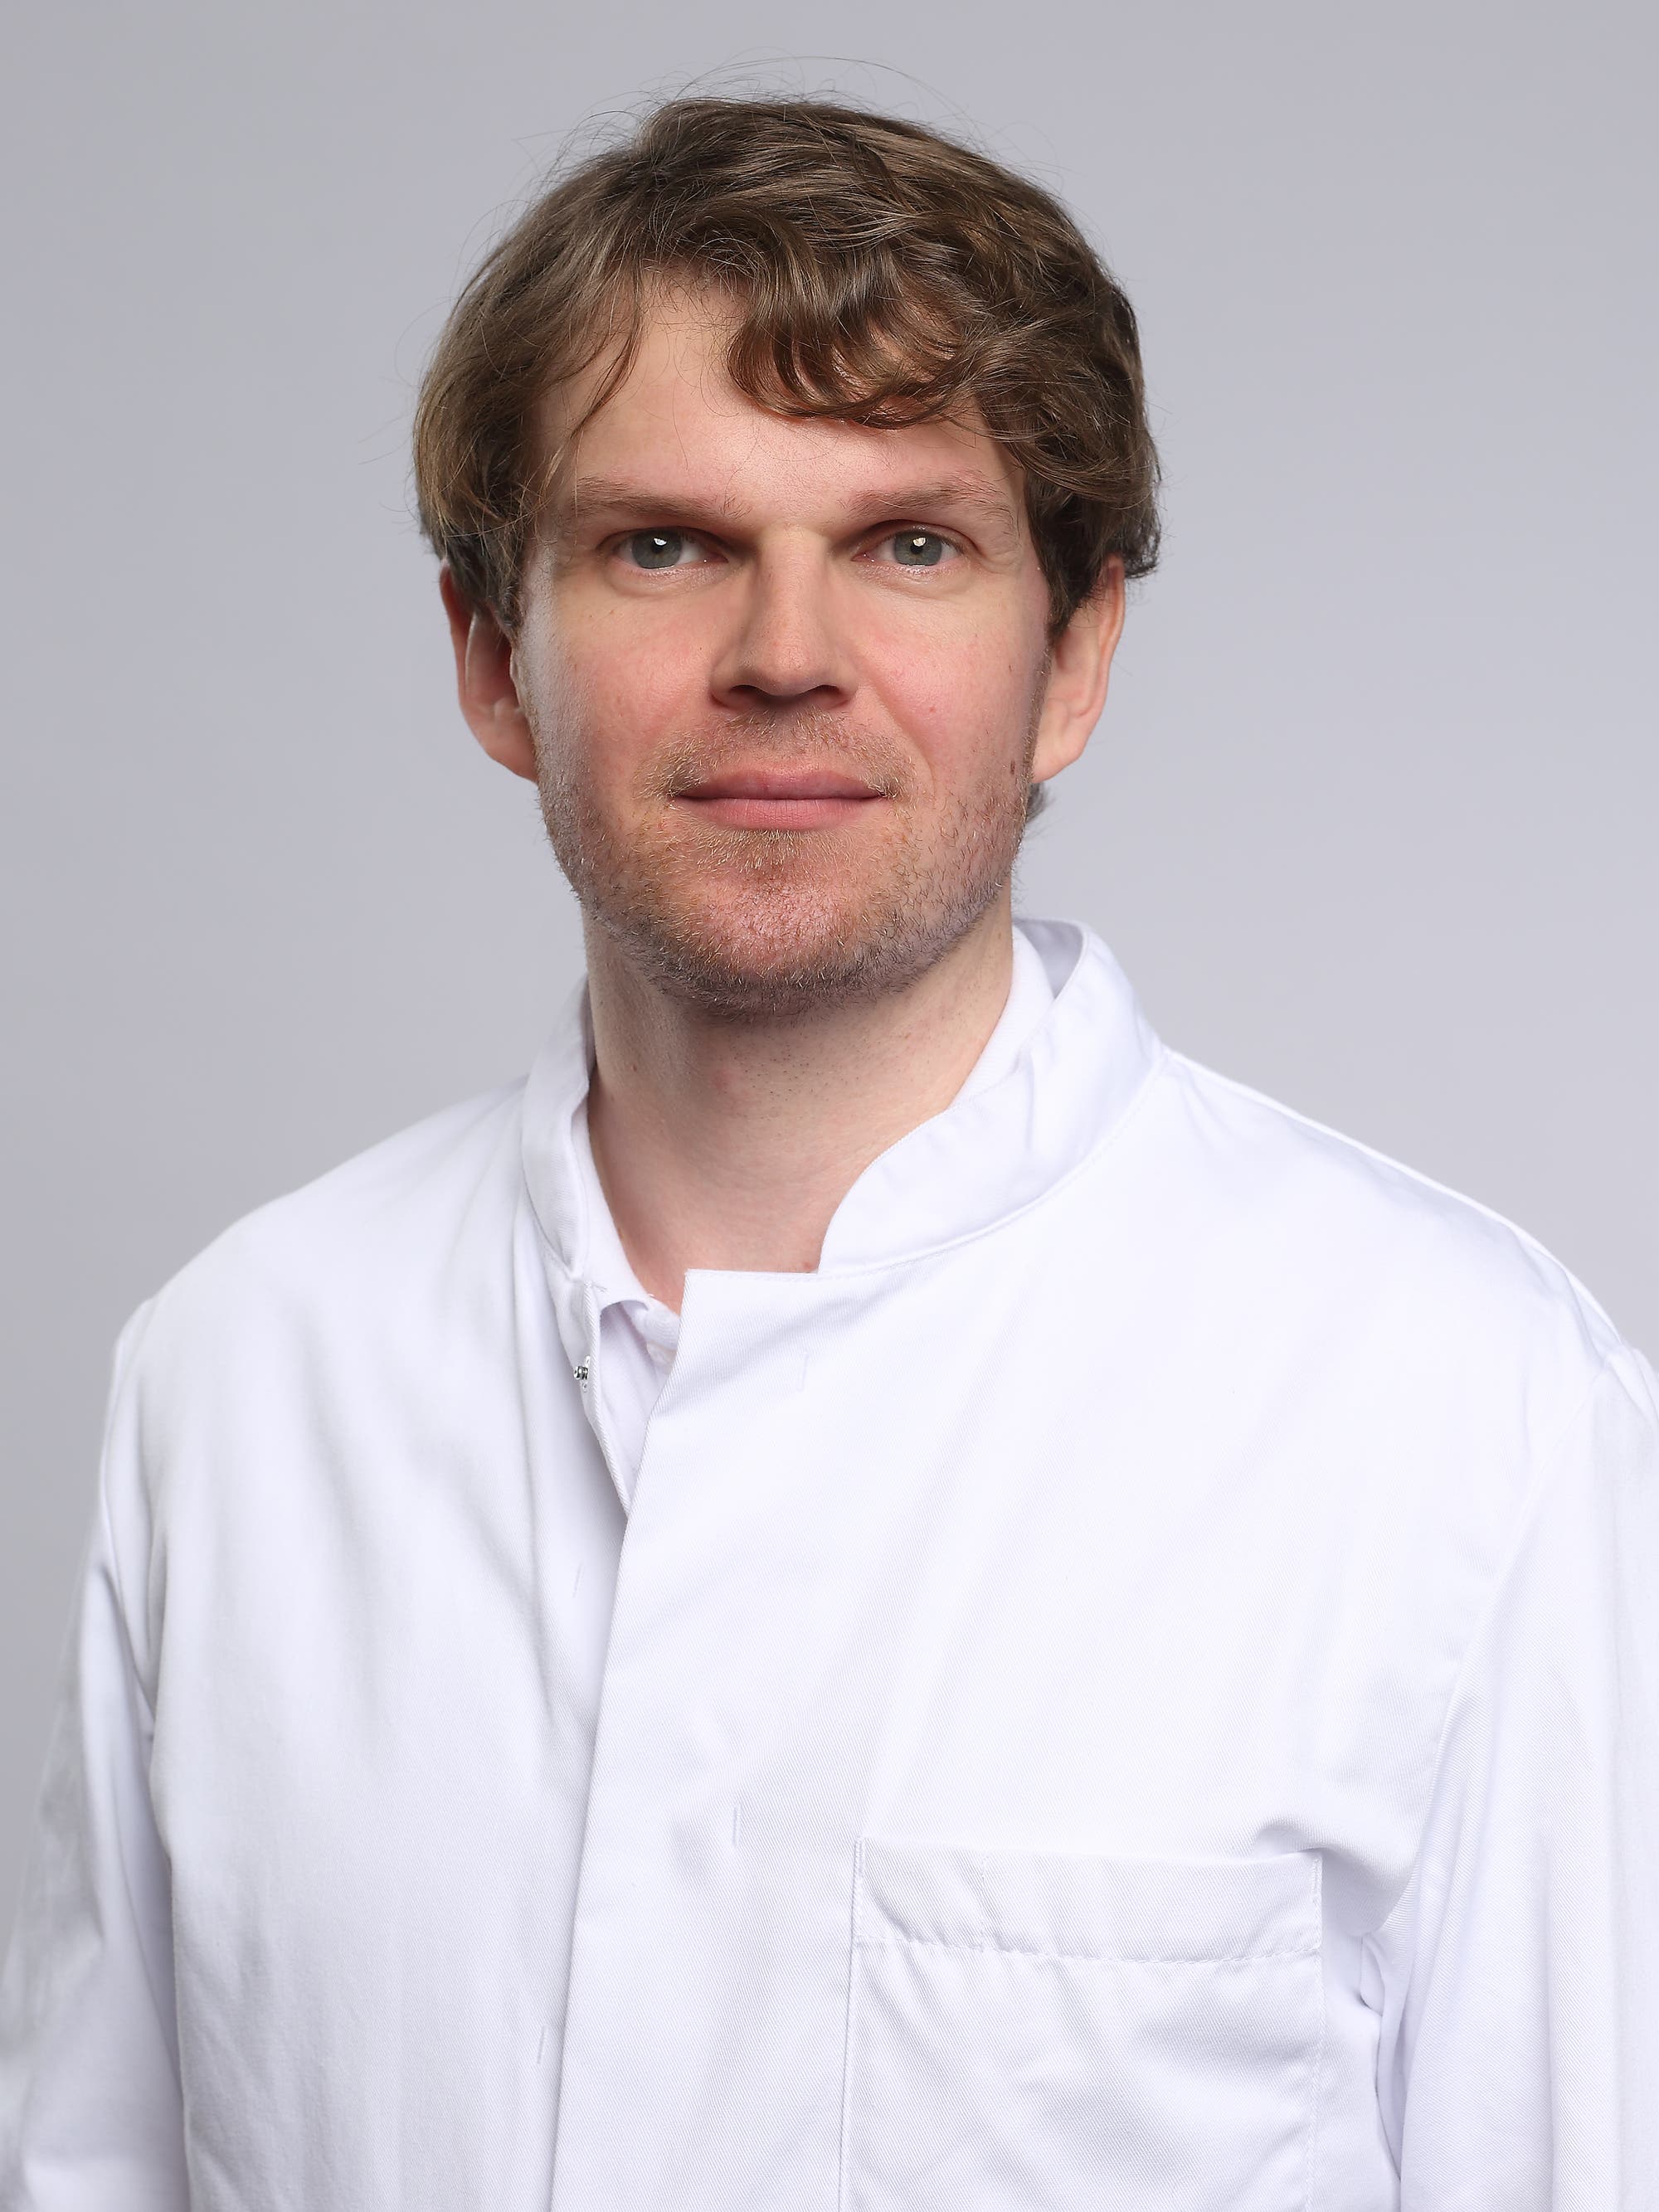 Sebastian Dietrich ist Facharzt für Plastische und Ästhetische Chirurgie und als Oberarzt an der Ev. Elisabeth Klinik in Berlin tätig.